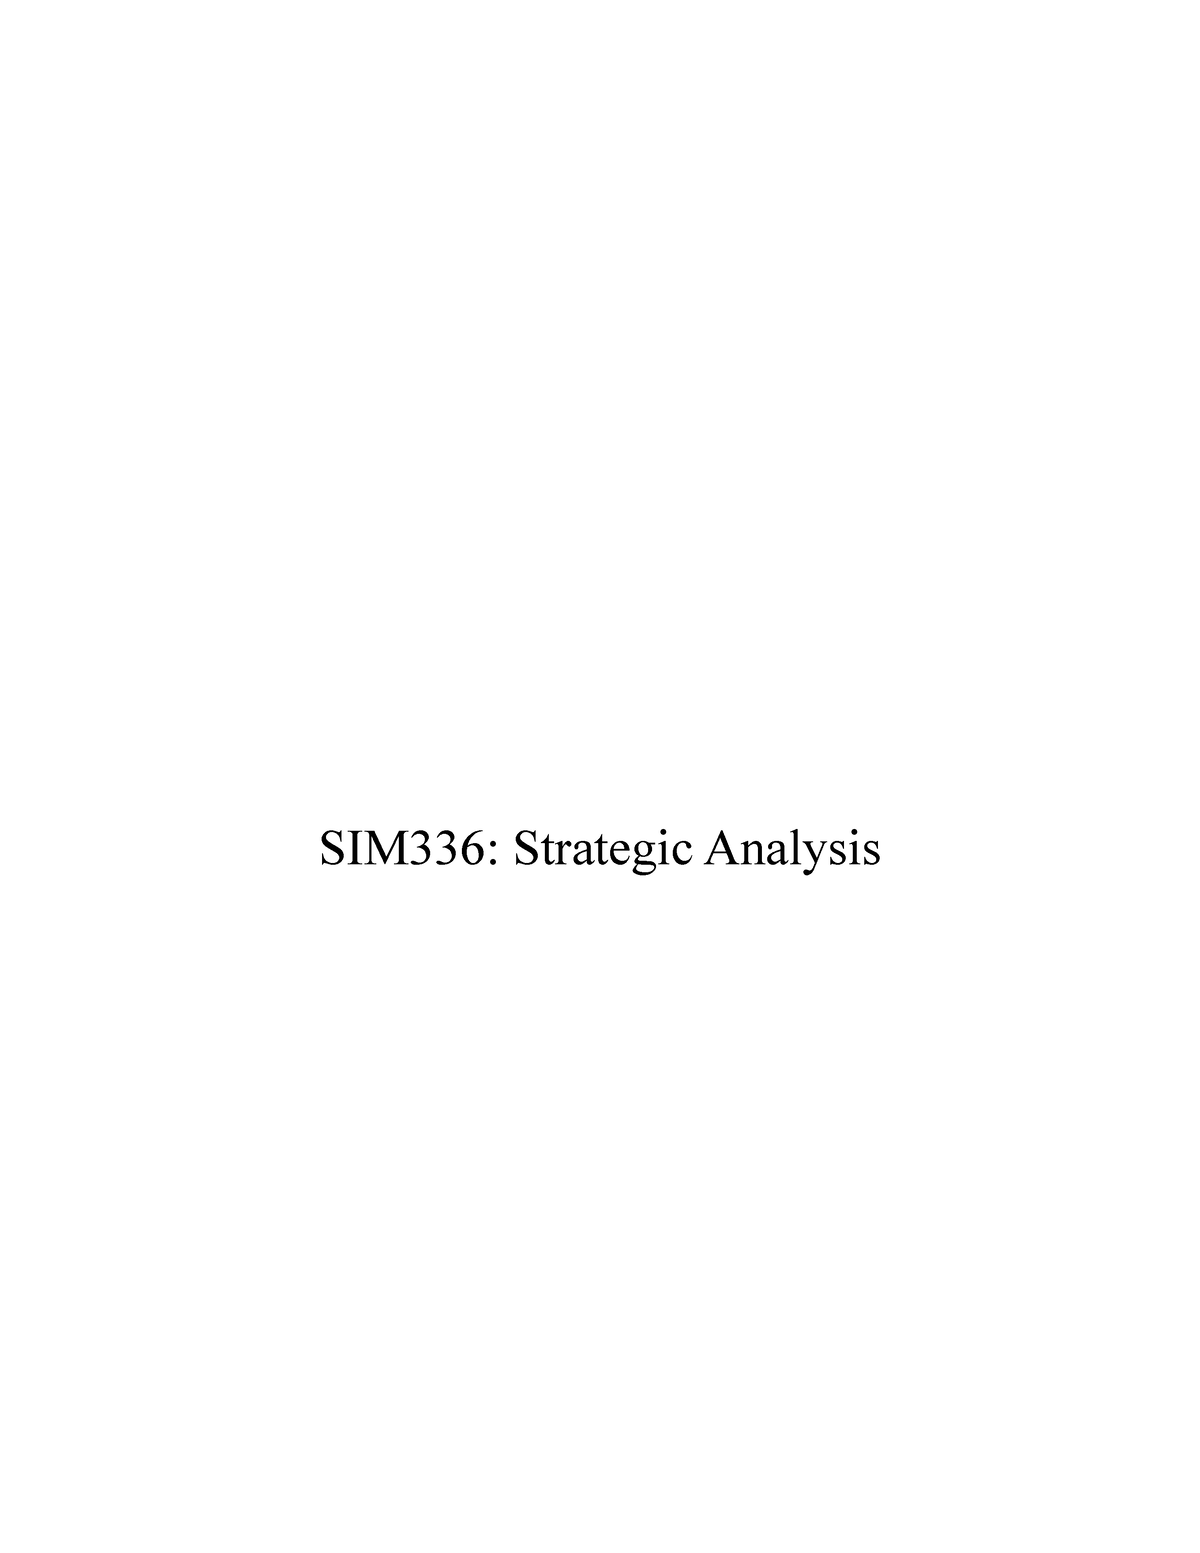 sim336 strategic management assignment